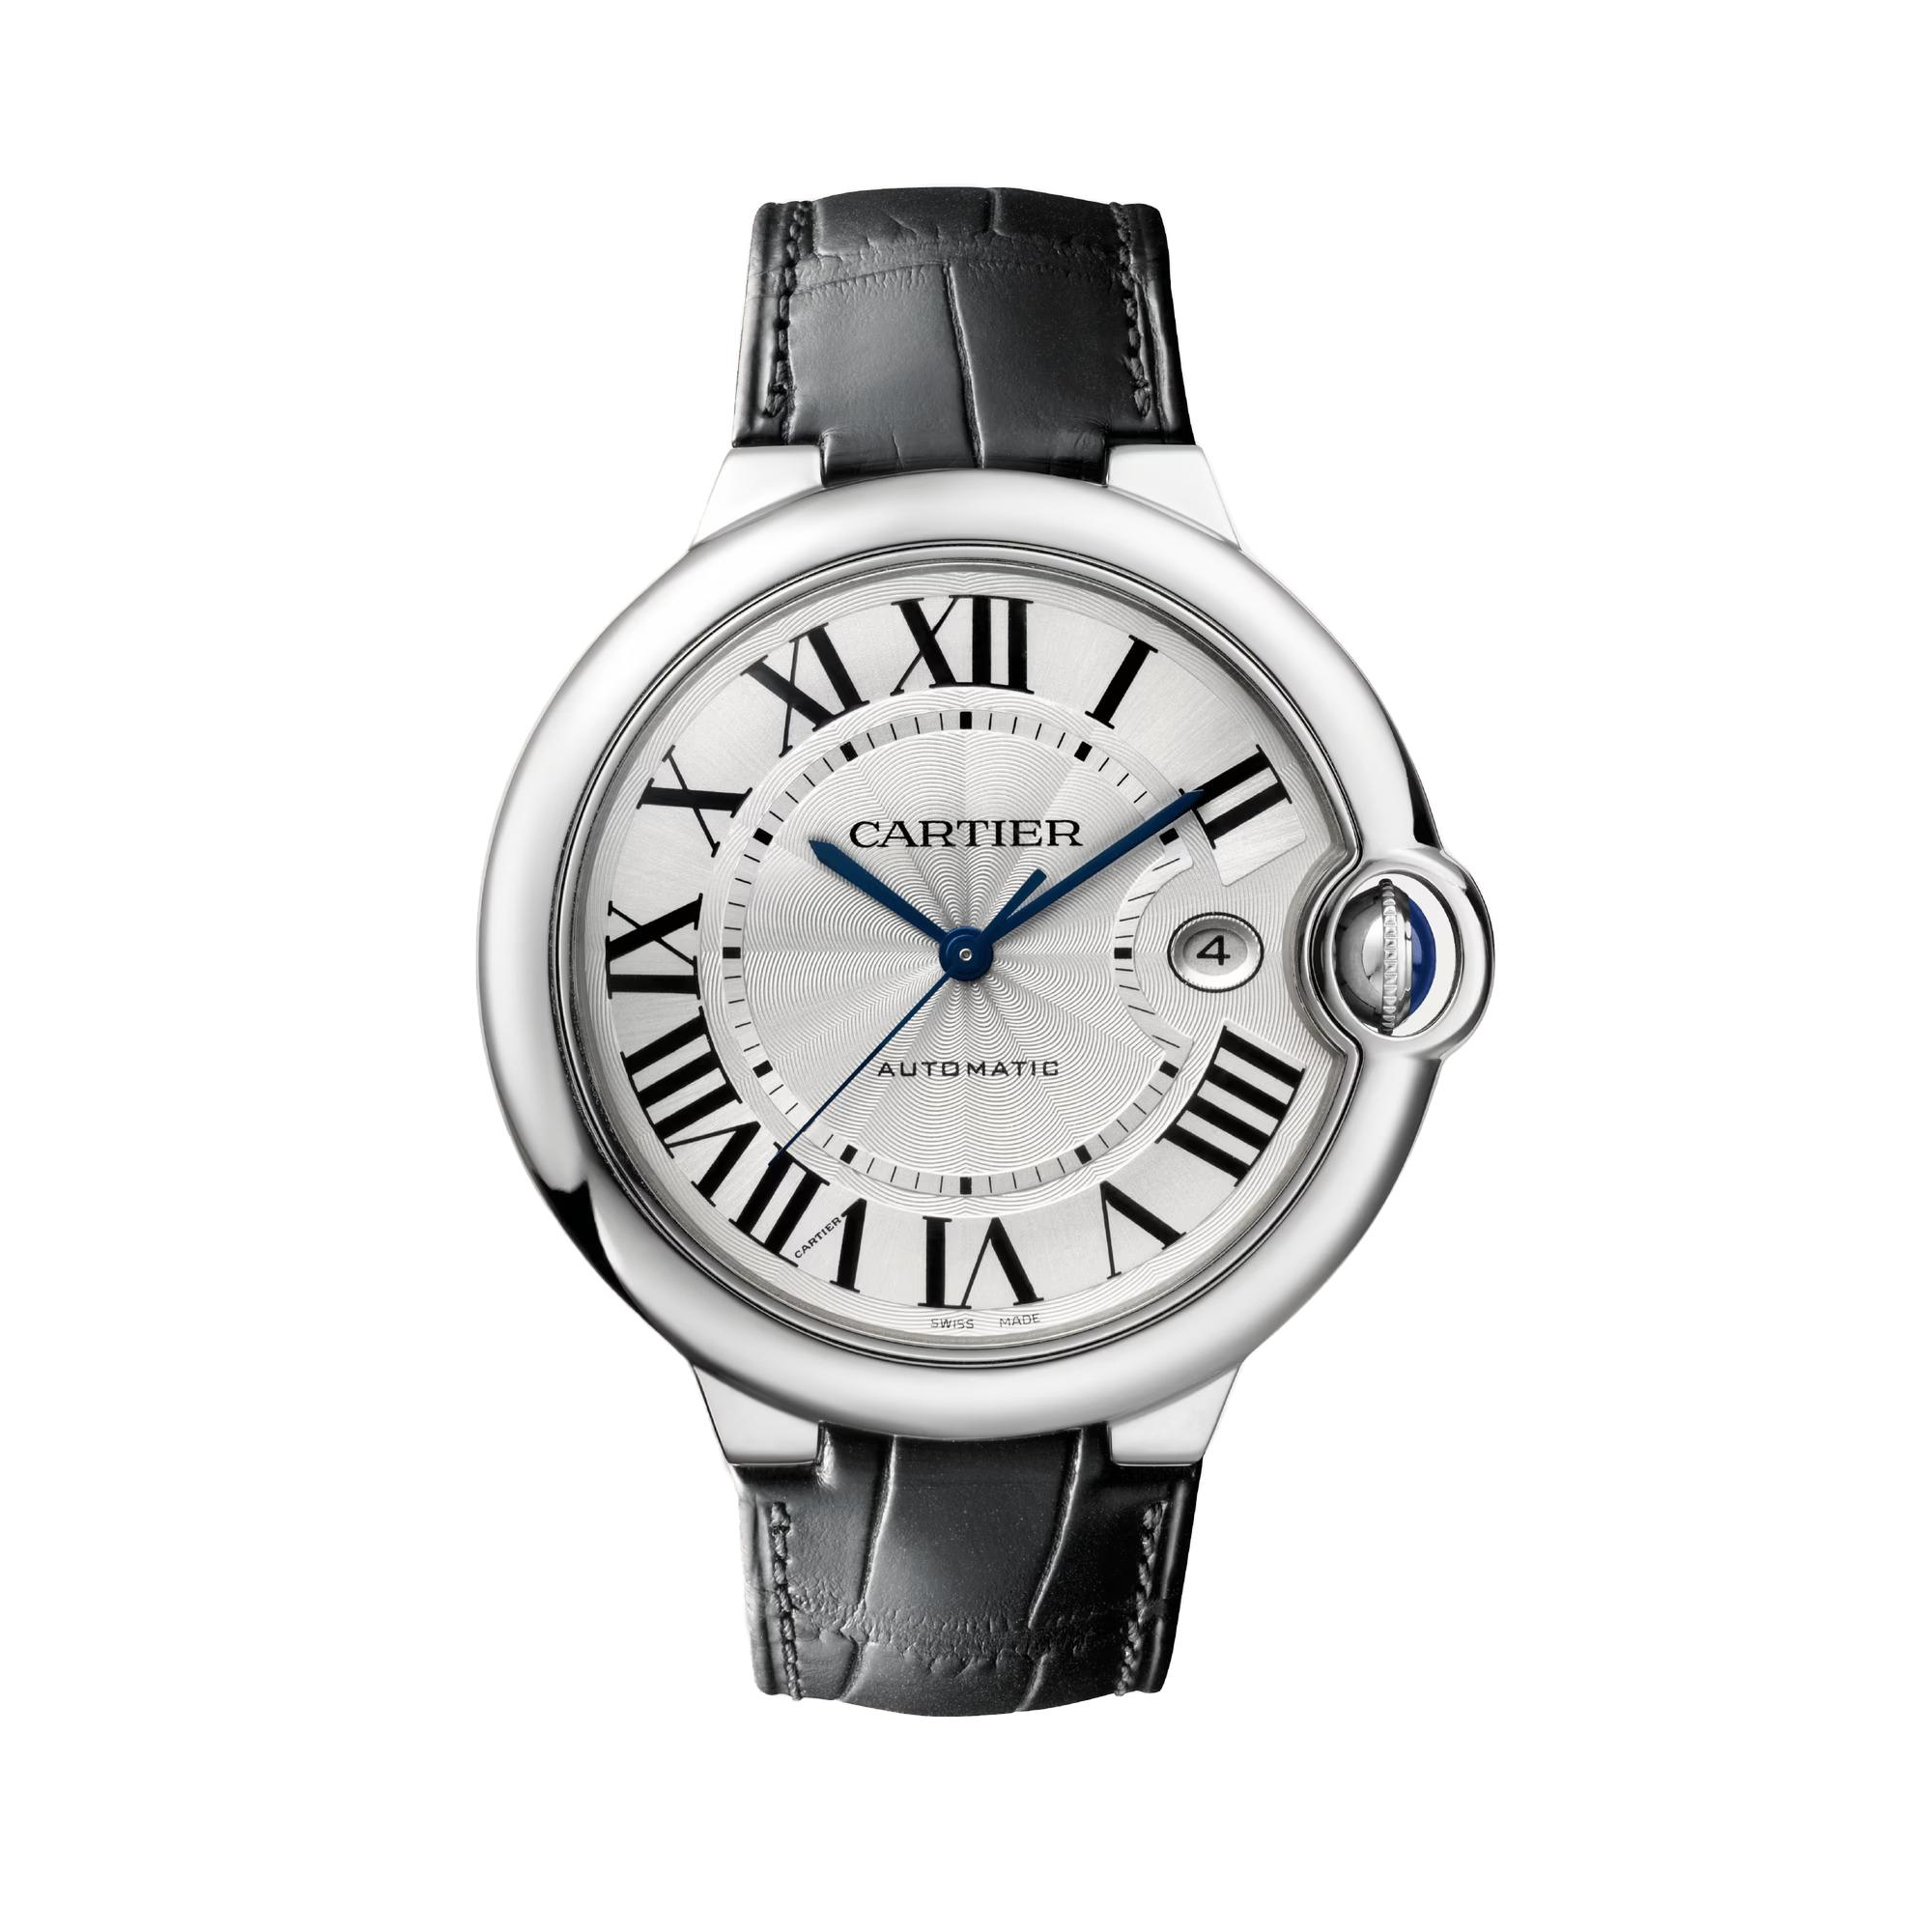 Ballon Bleu de Cartier Watch, size large